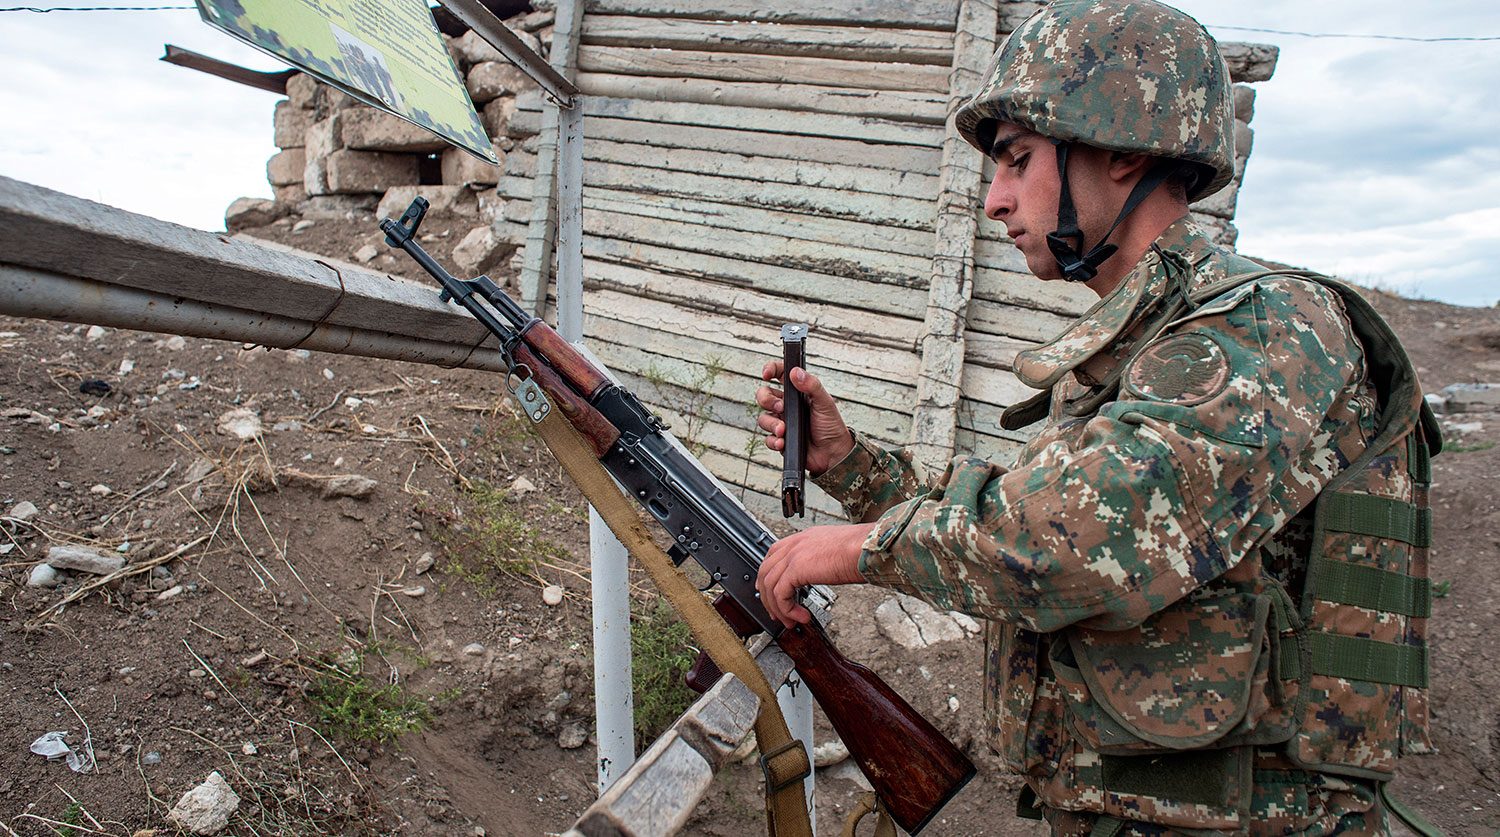 Անցնող շաբաթ ադրբեջանական կողմը հայ դիրքապահների ուղղությամբ արձակել է շուրջ 650 կրակոց